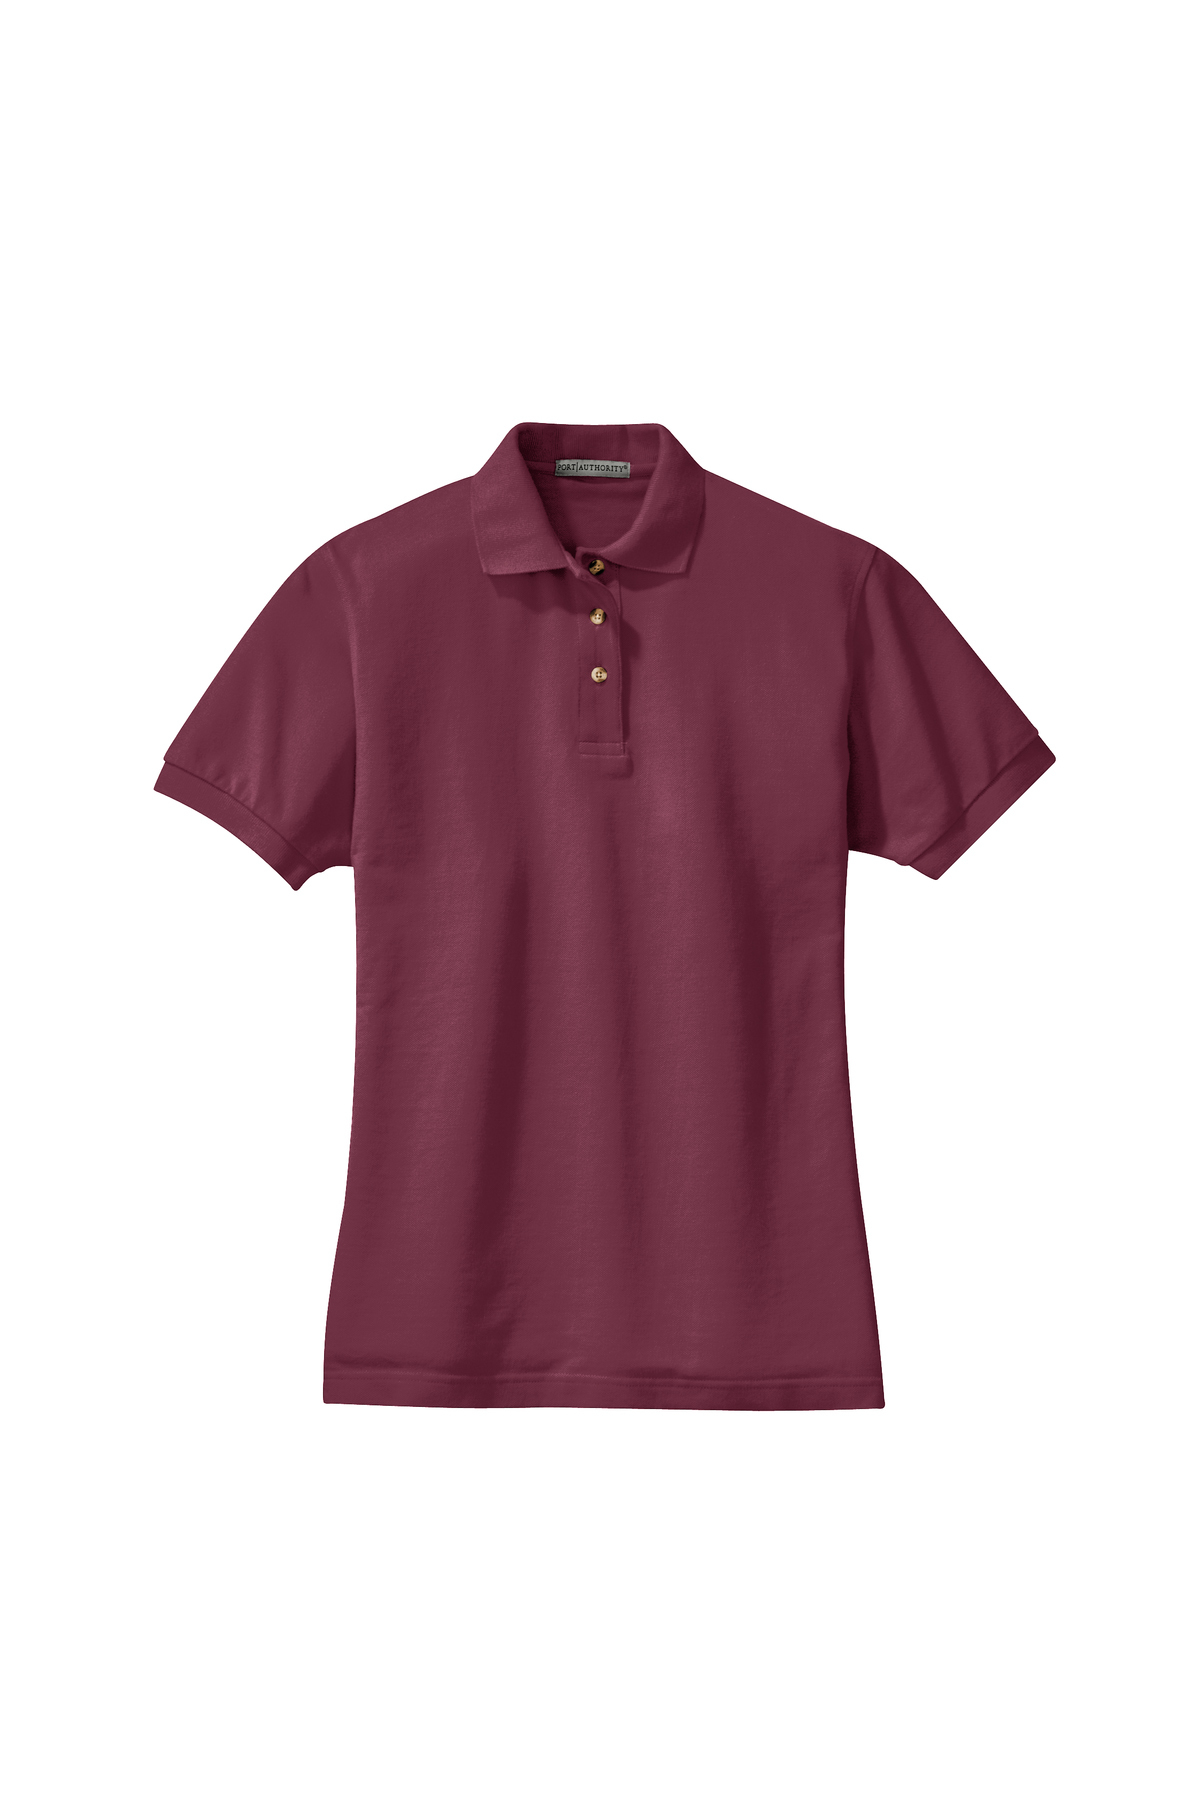 Port Authority Ladies Short Sleeve Cotton Pique Knit Sport Shirt Polo-Oxford L420 